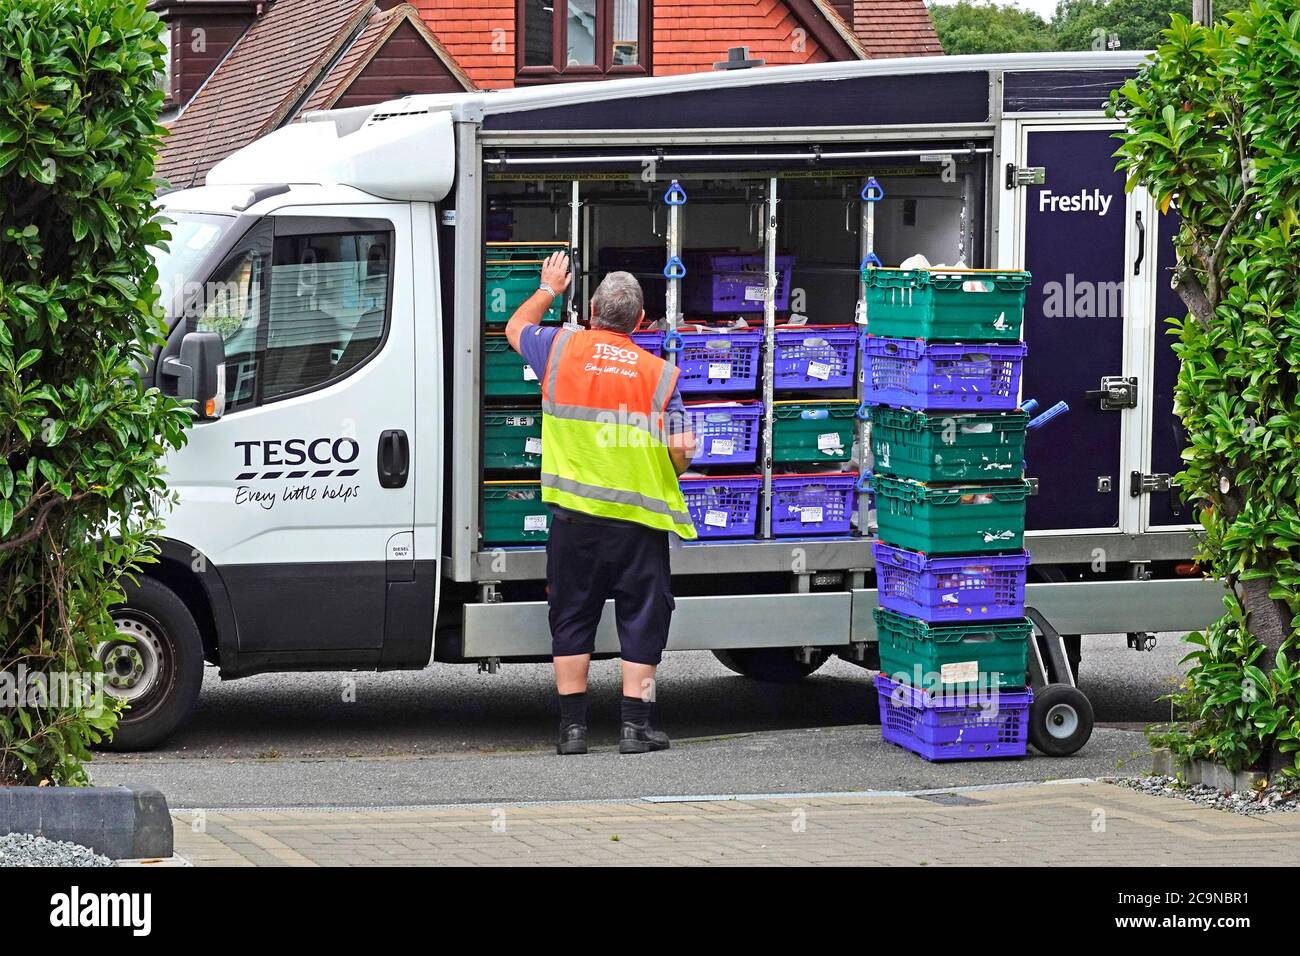 Supermarché en ligne chaîne d'approvisionnement à la maison alimentation épicerie livraison sur camion Tesco chargement sur chariot à la maison client Essex Angleterre Royaume-Uni Banque D'Images